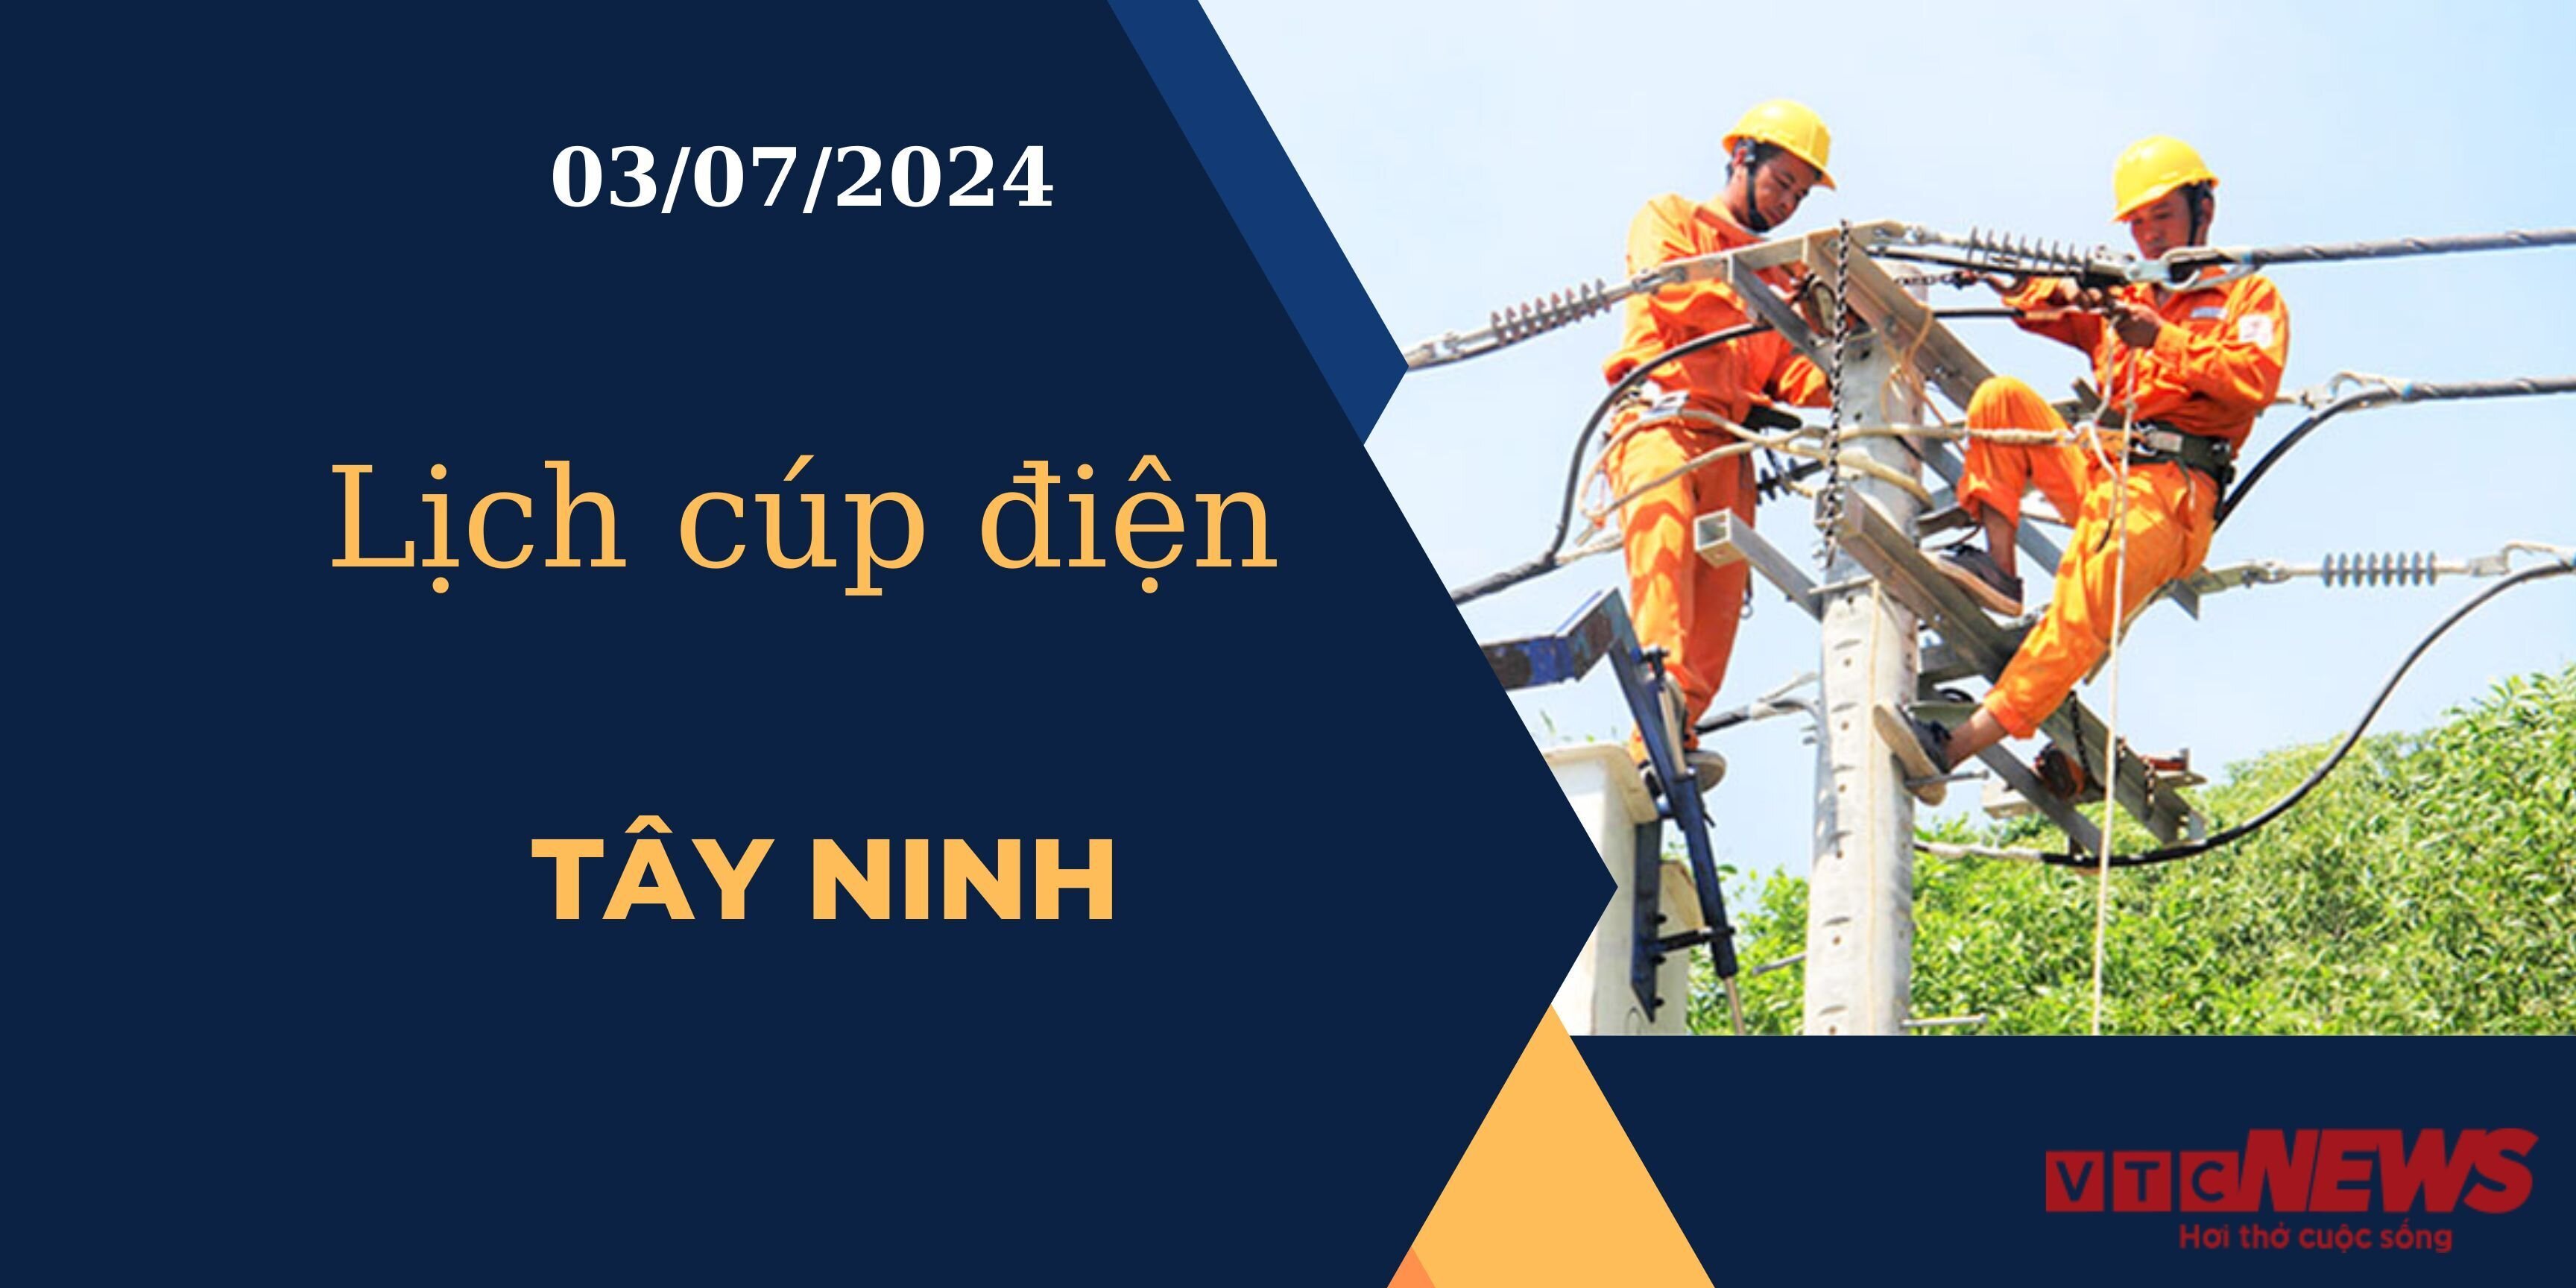 Lịch cúp điện hôm nay ngày 03/07/2024 tại Tây Ninh